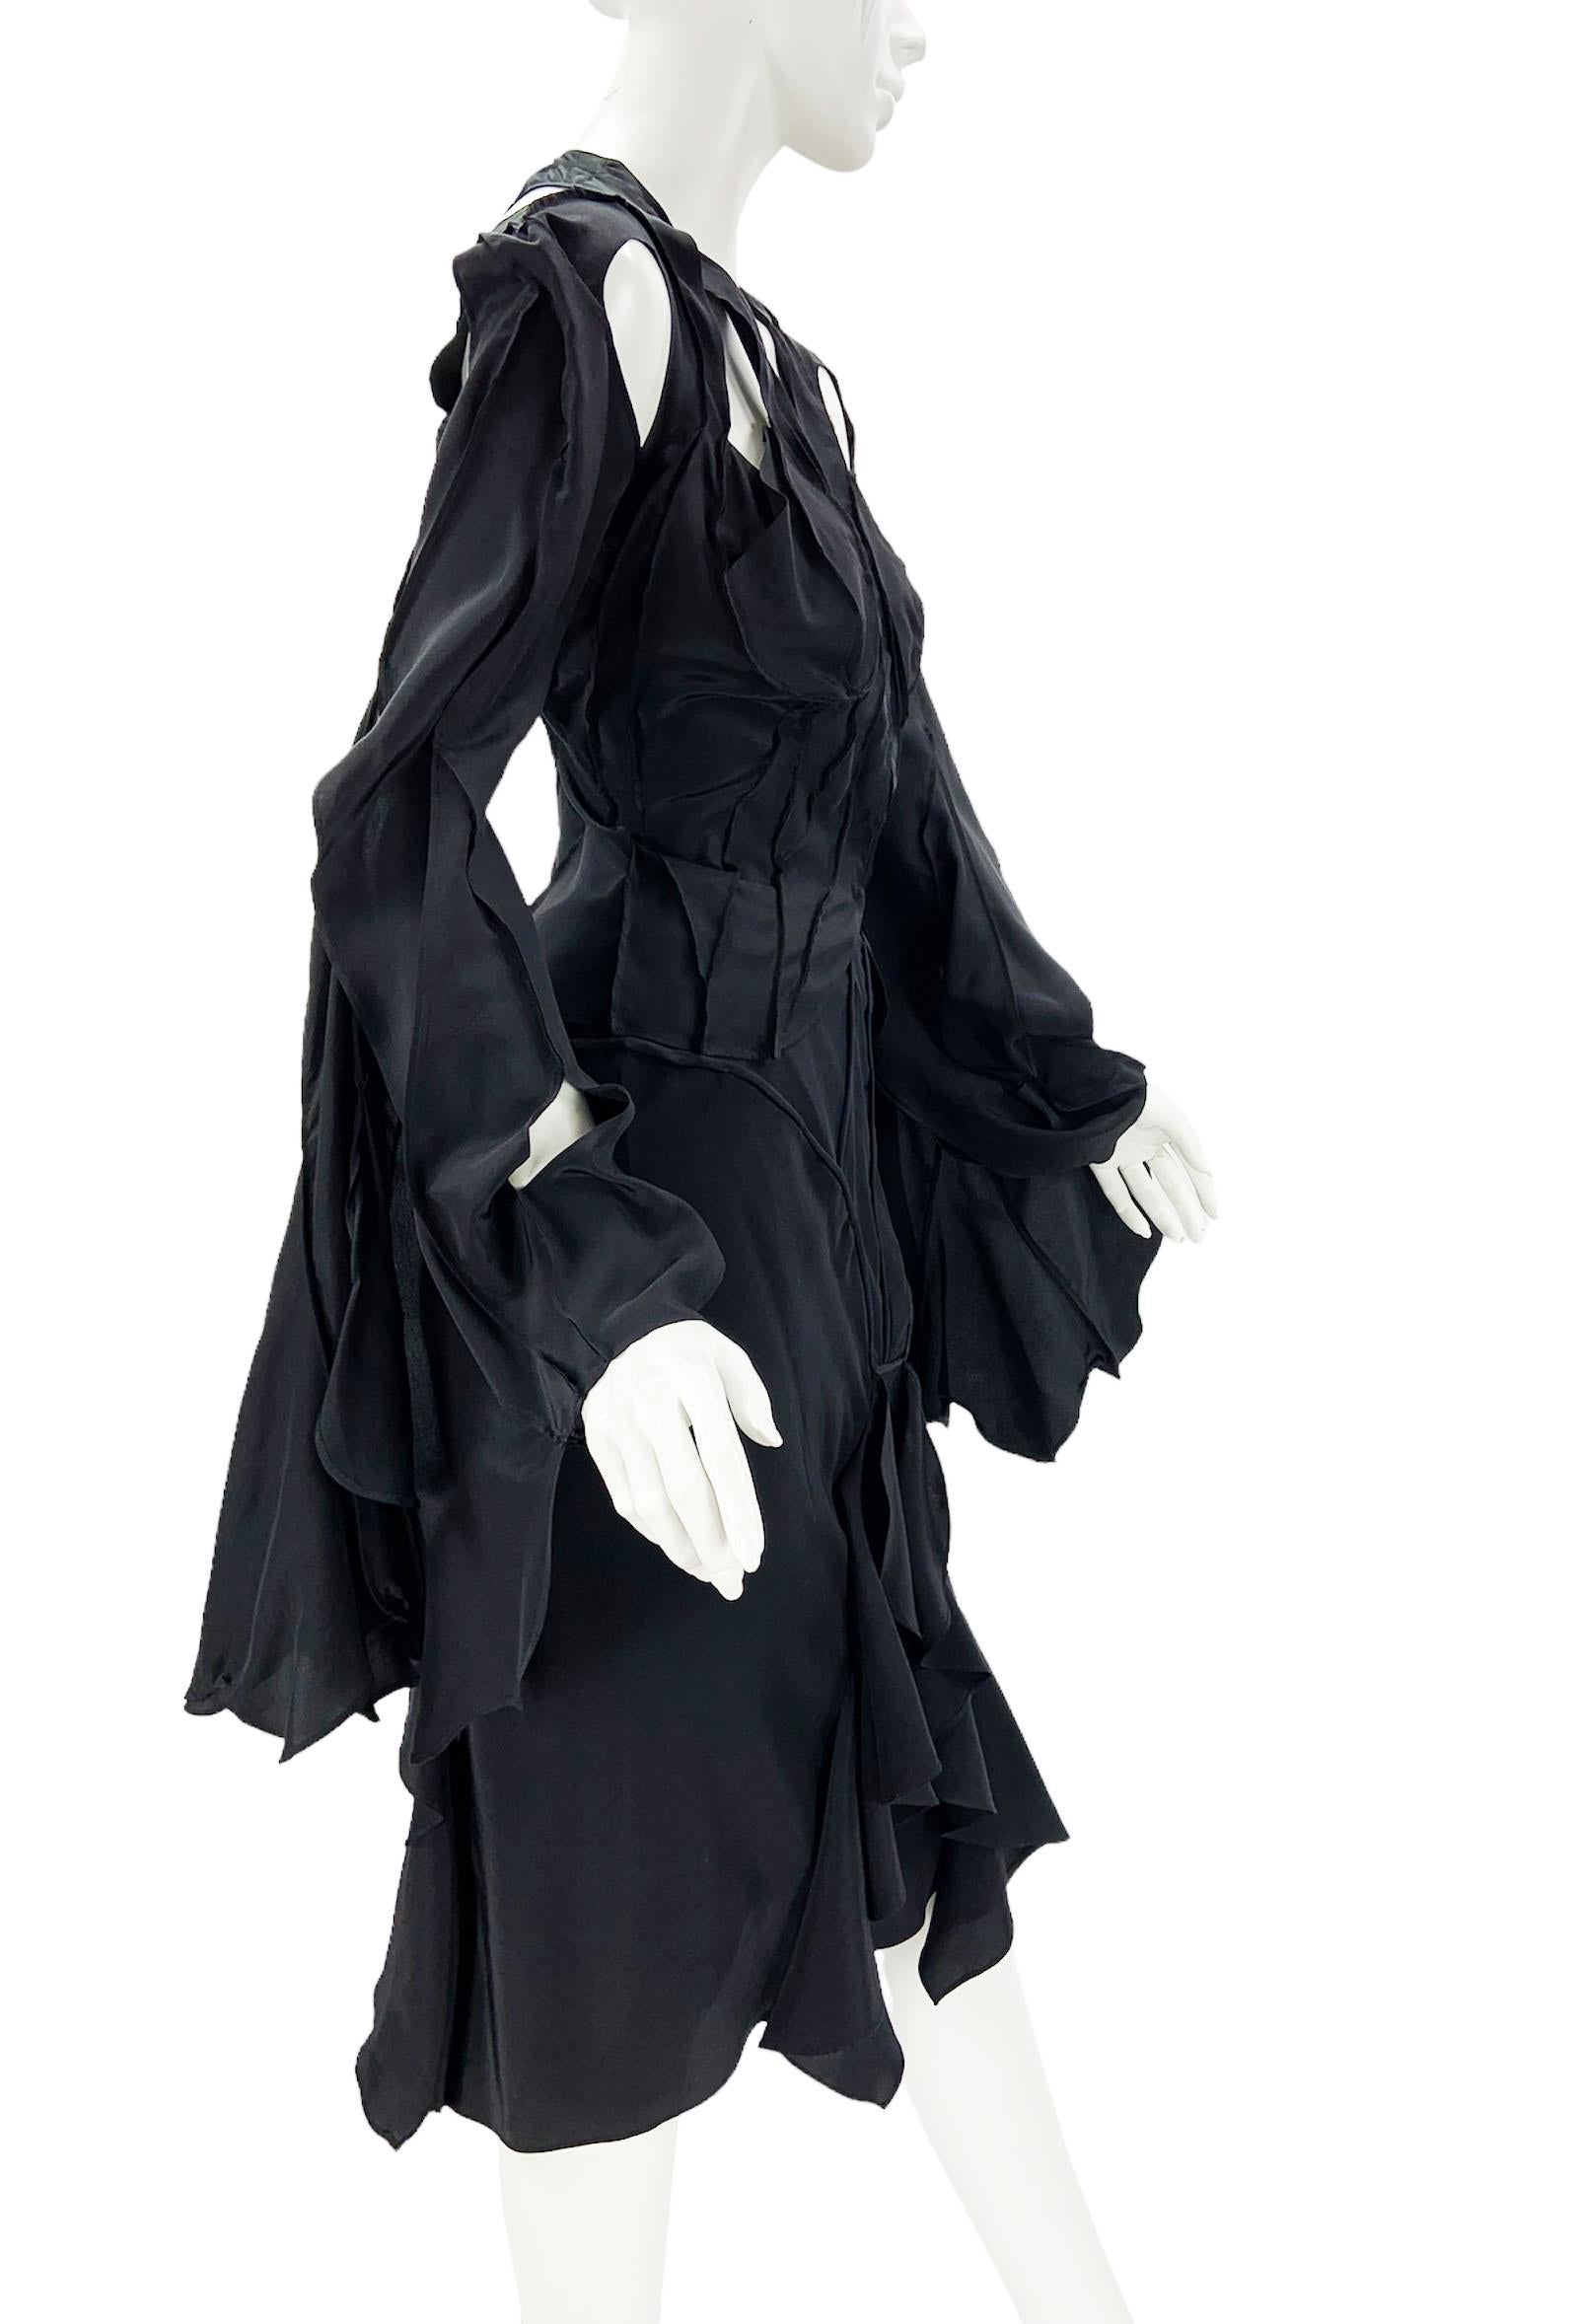 Noir Tom Ford pour Yves Saint Laurent - Tailleur jupe en soie noire, taille 38 - US 6, printemps-été 2003 en vente